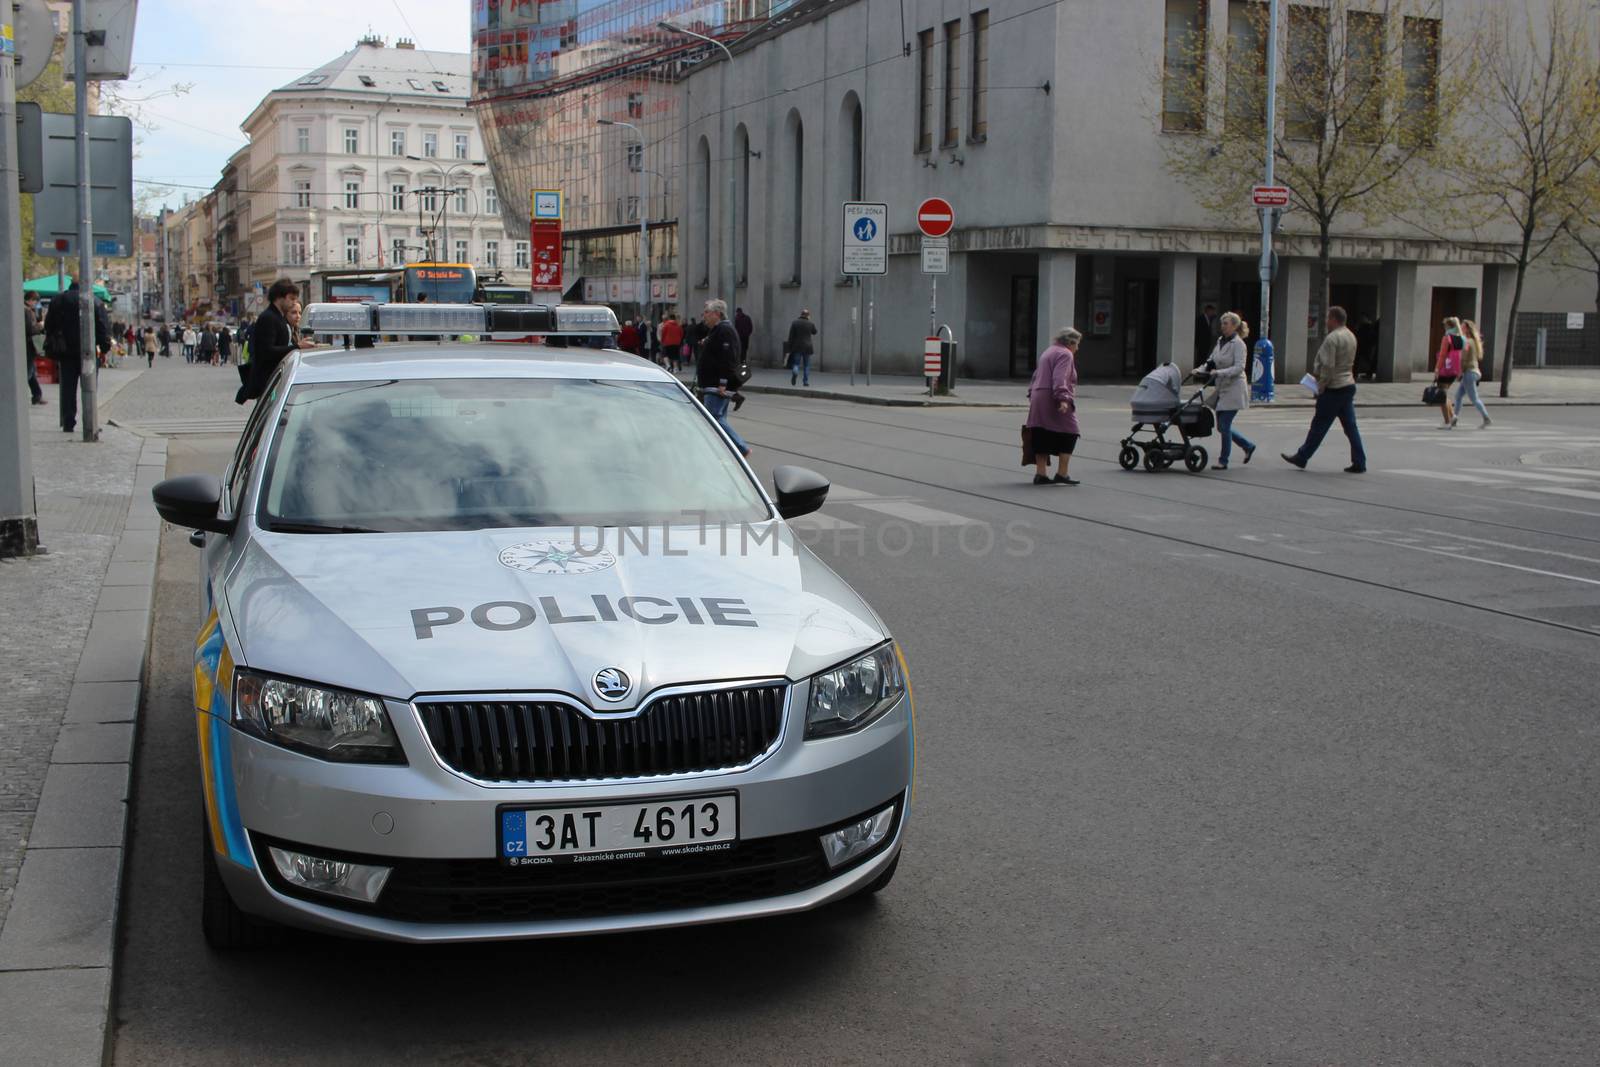 Skoda Octavia Police Car Parked in Prague by bensib